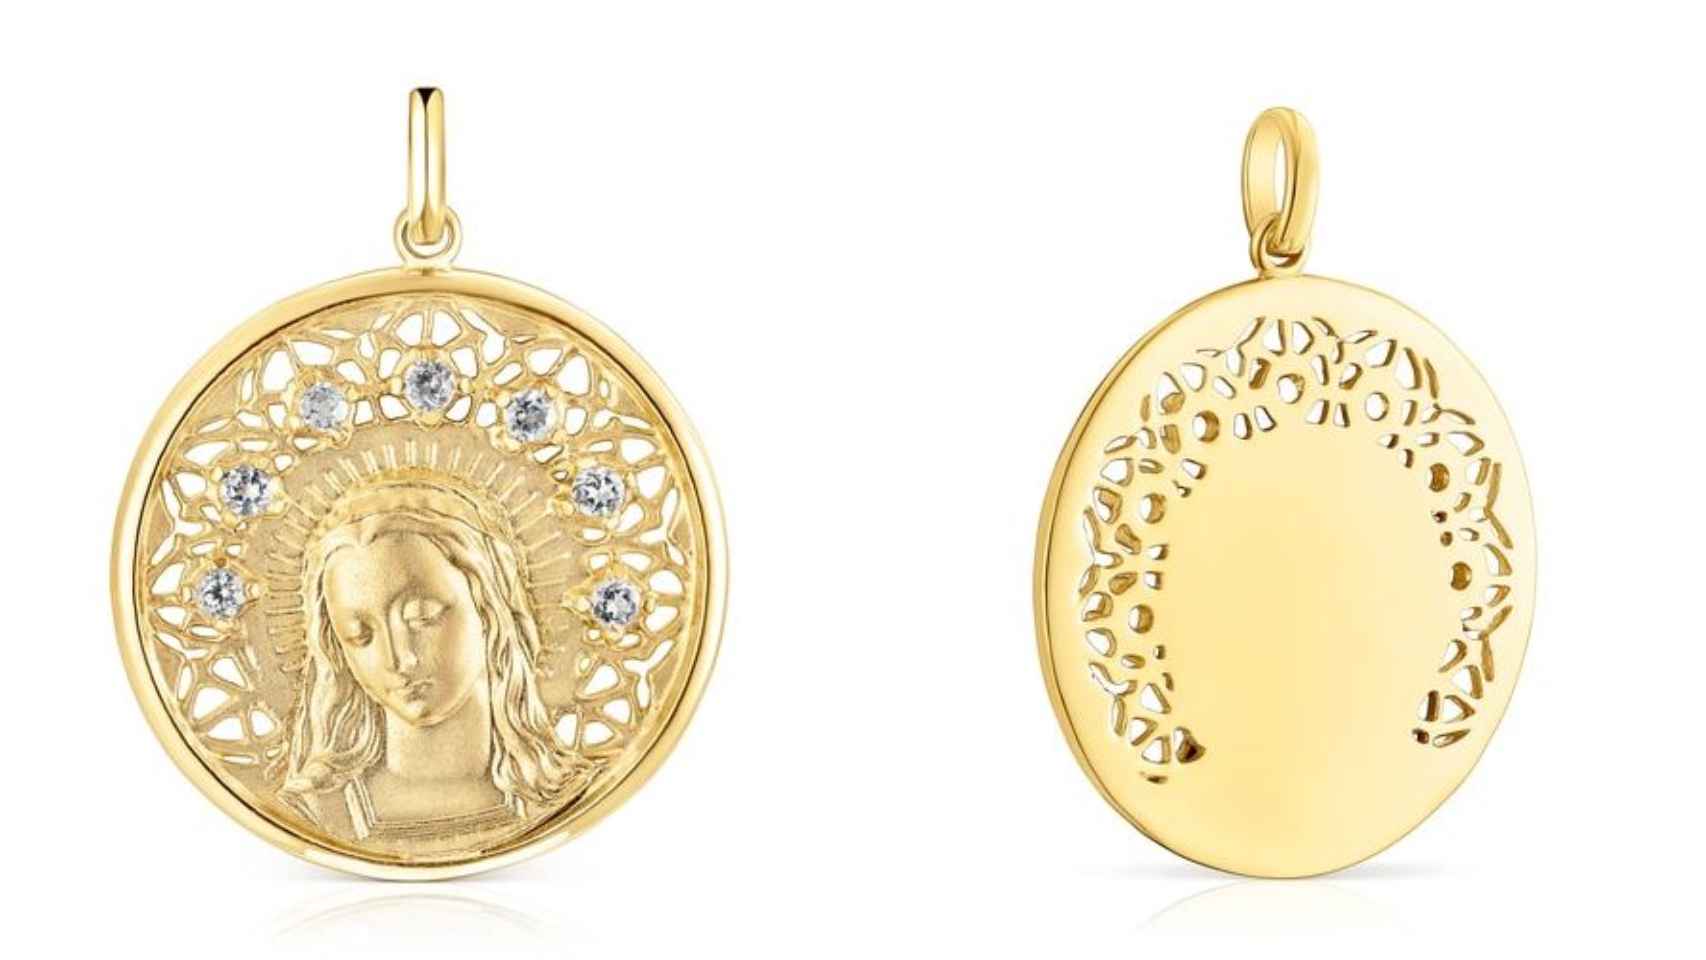 Detalle de la medalla de la Virgen María de la colección Tamara Falcó x Tous.